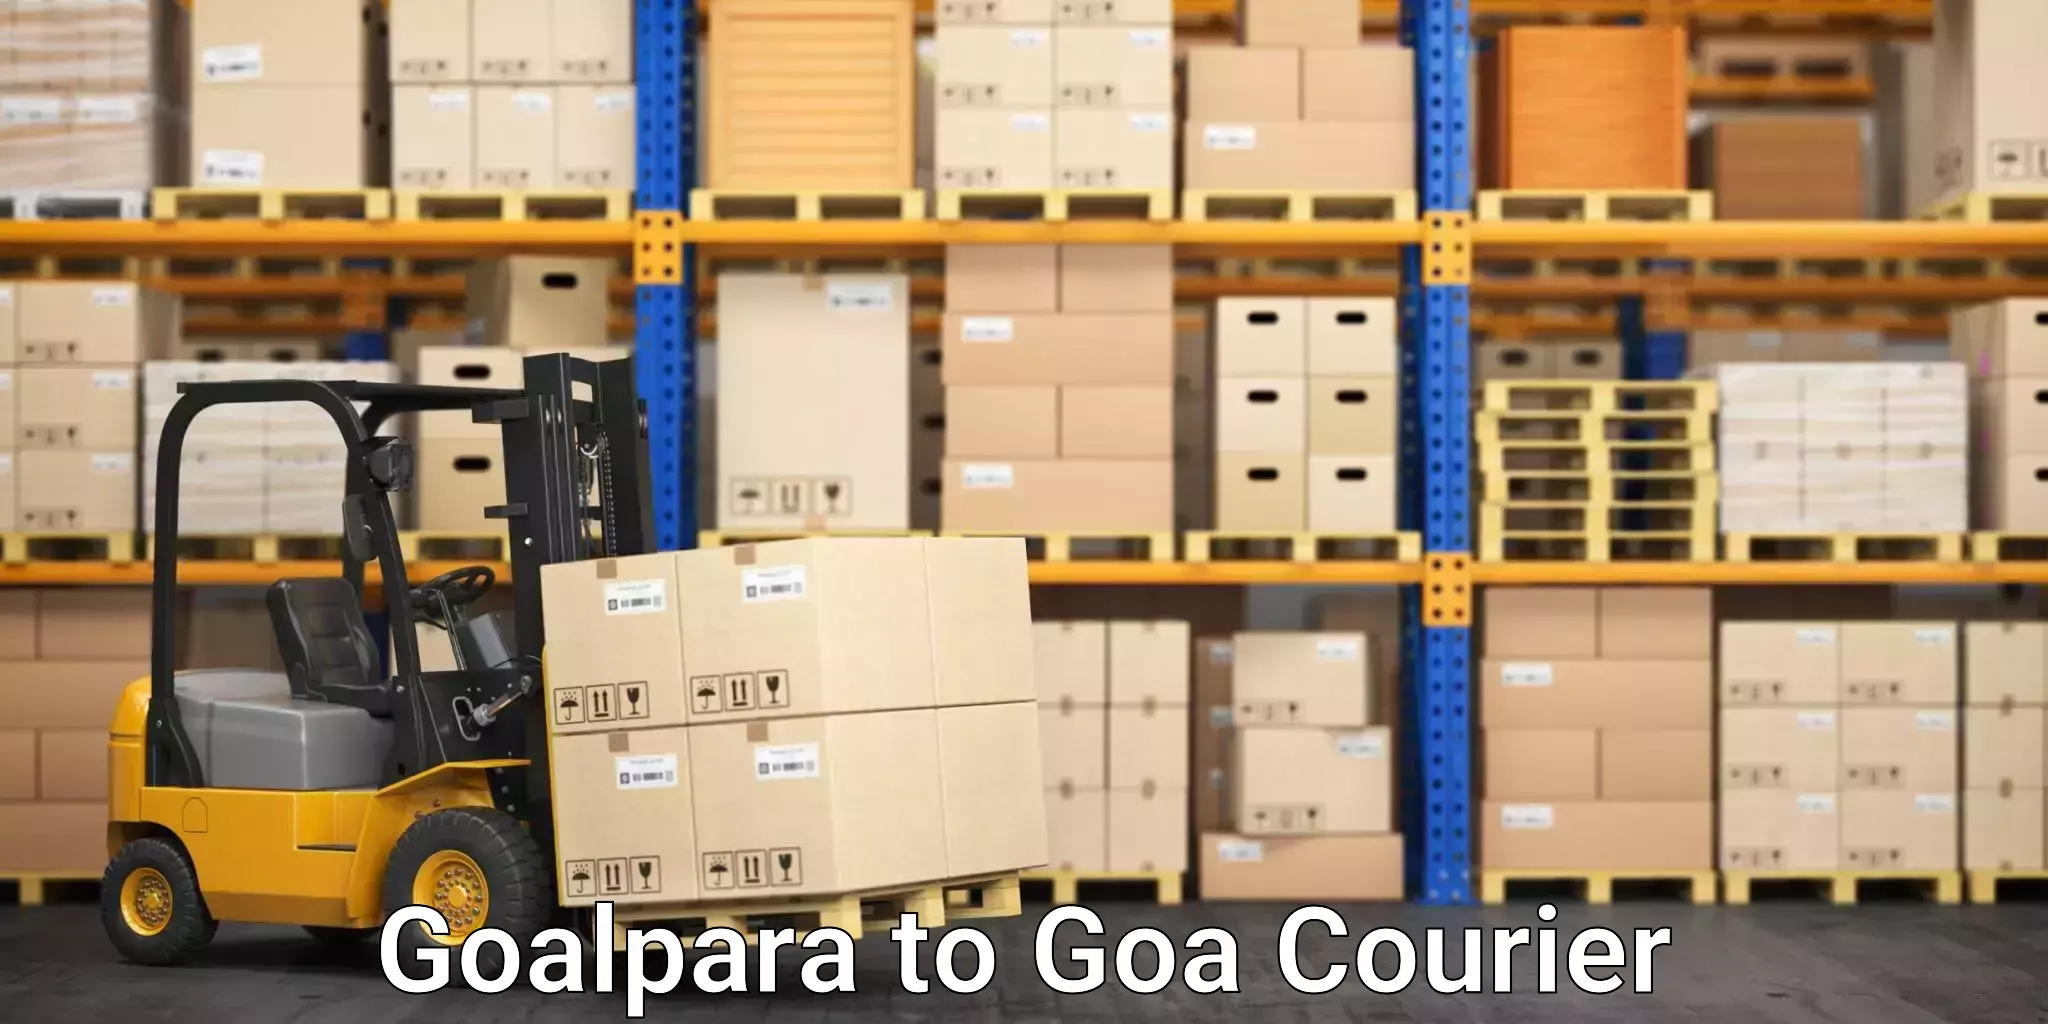 Express package handling Goalpara to Ponda